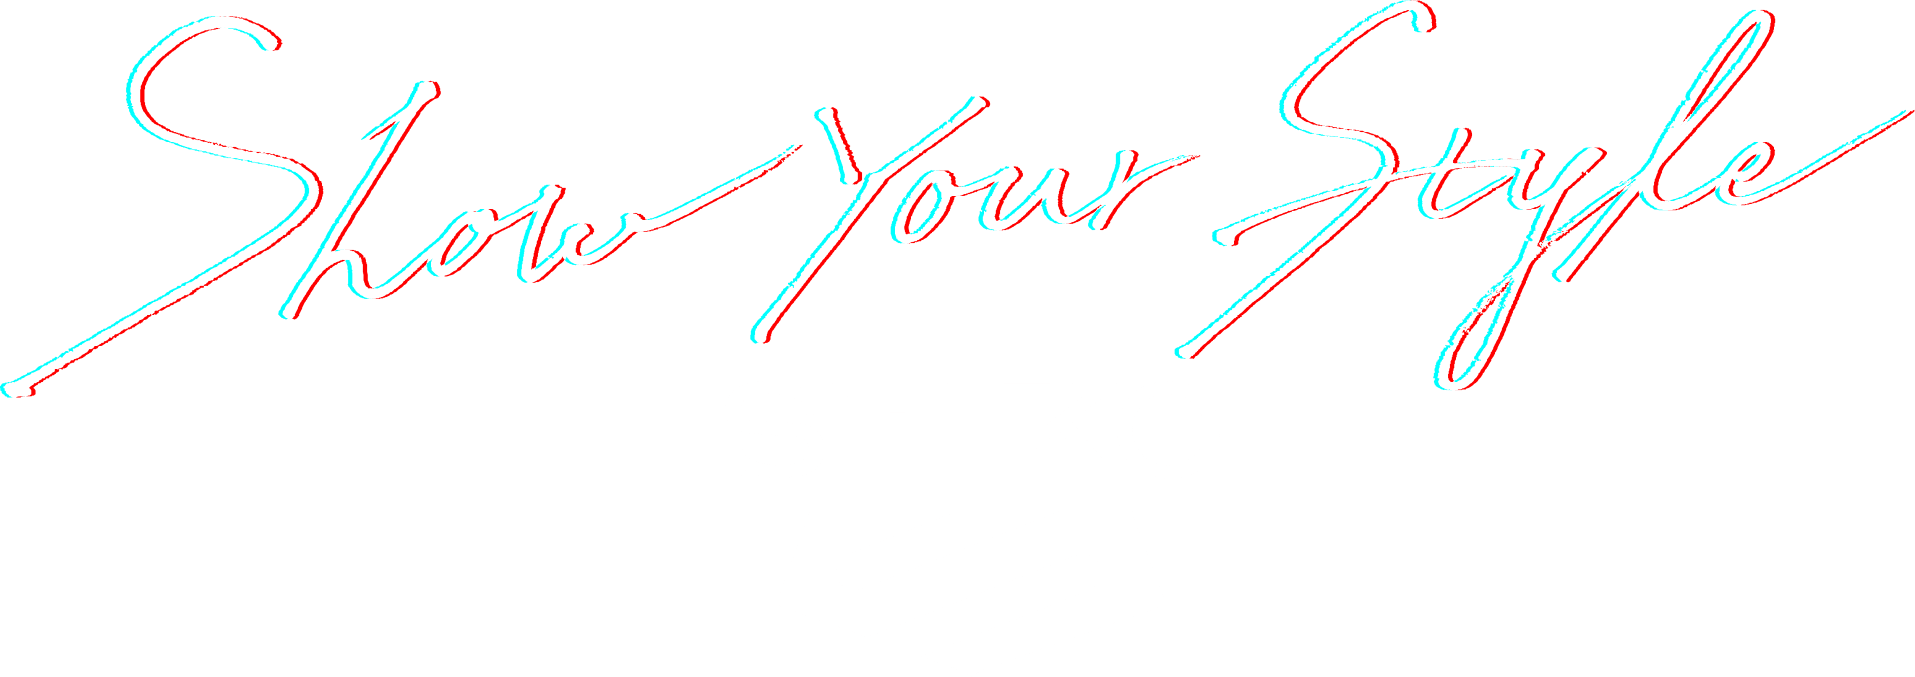 Seiko: Show your style